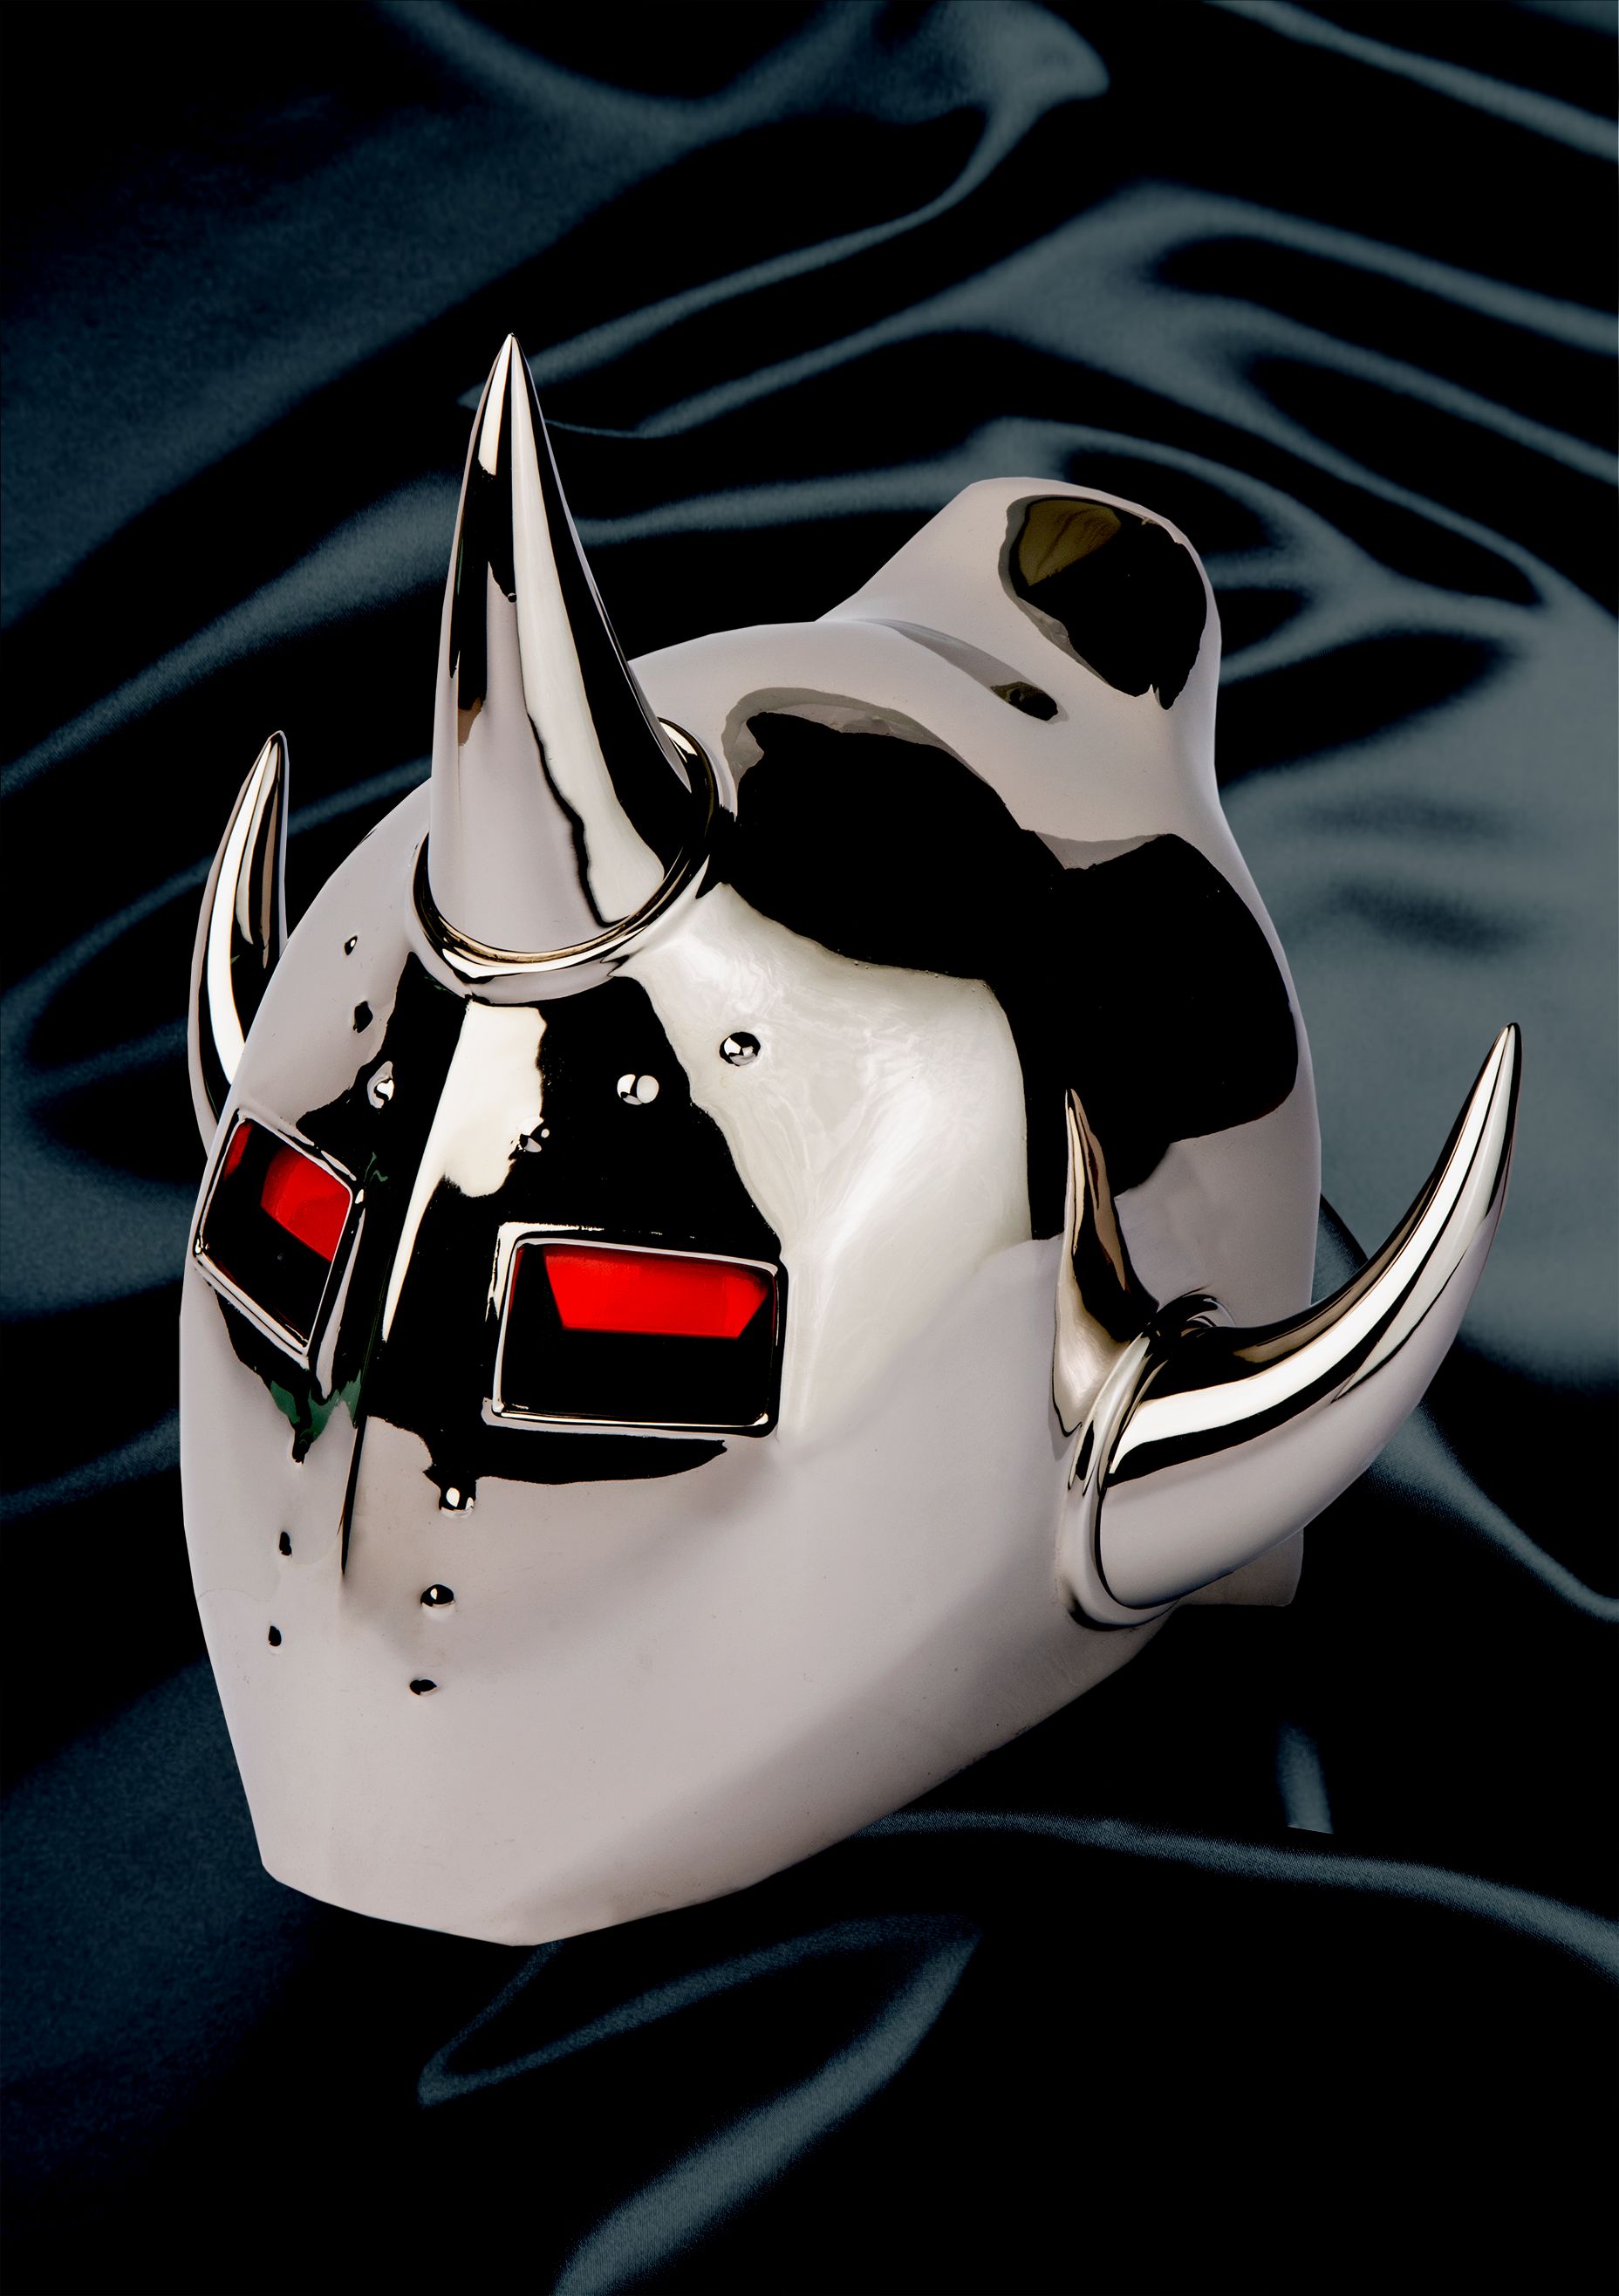 キャステム モース硬度4の キン肉マン 悪魔将軍マスクを発売決定